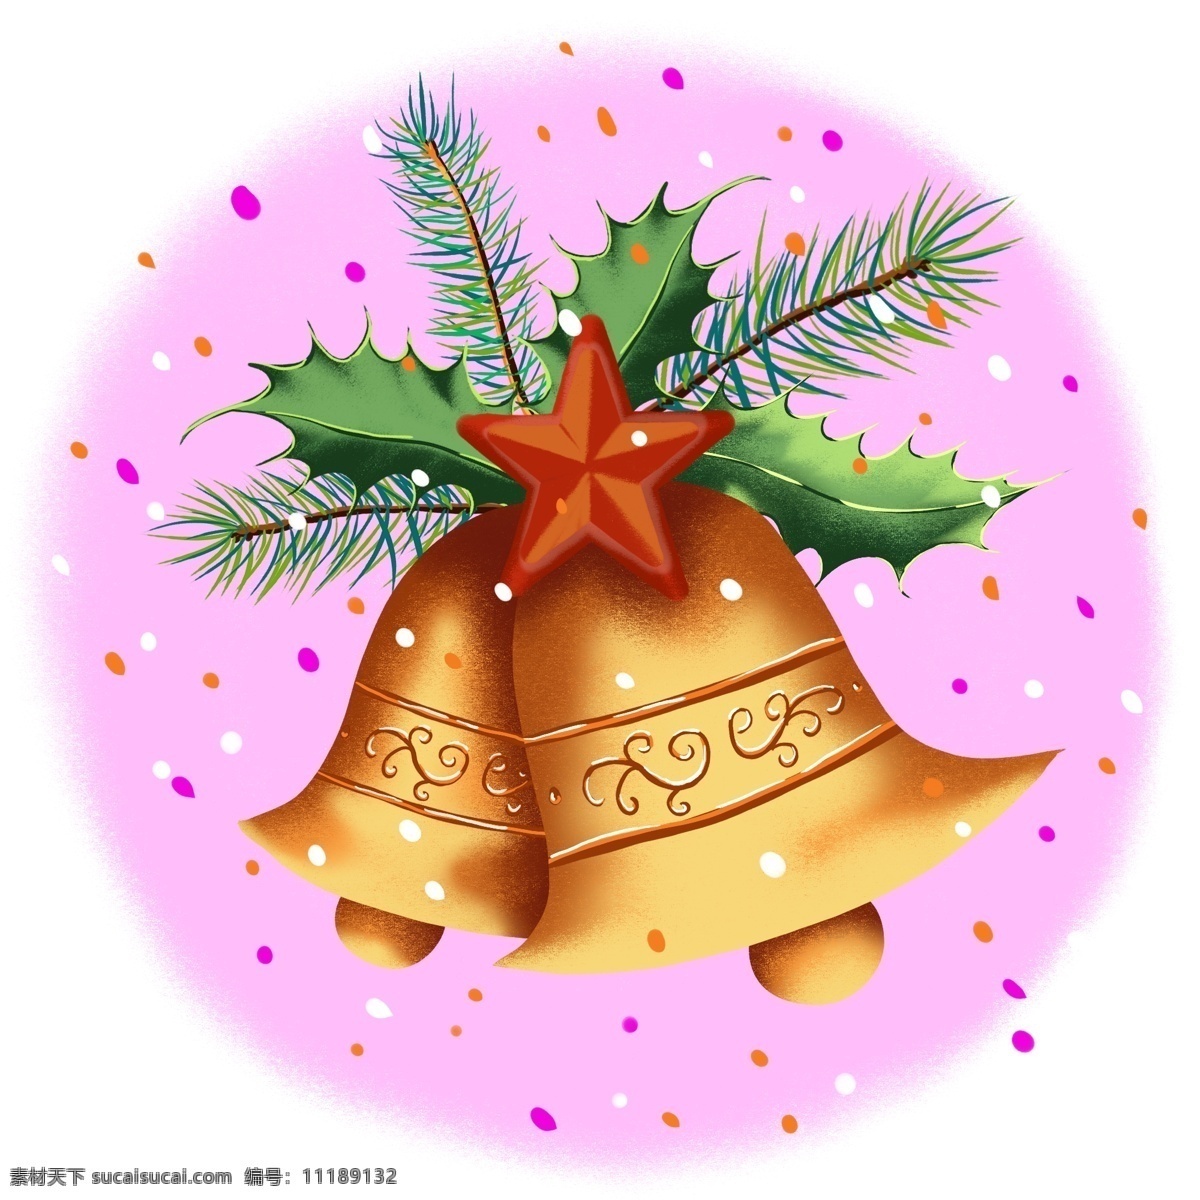 圣诞 铃铛 手绘 节日 插画 商用 元素 圣诞节 圣诞节元素 圣诞铃铛 金铃铛 金色 风 ps 分层